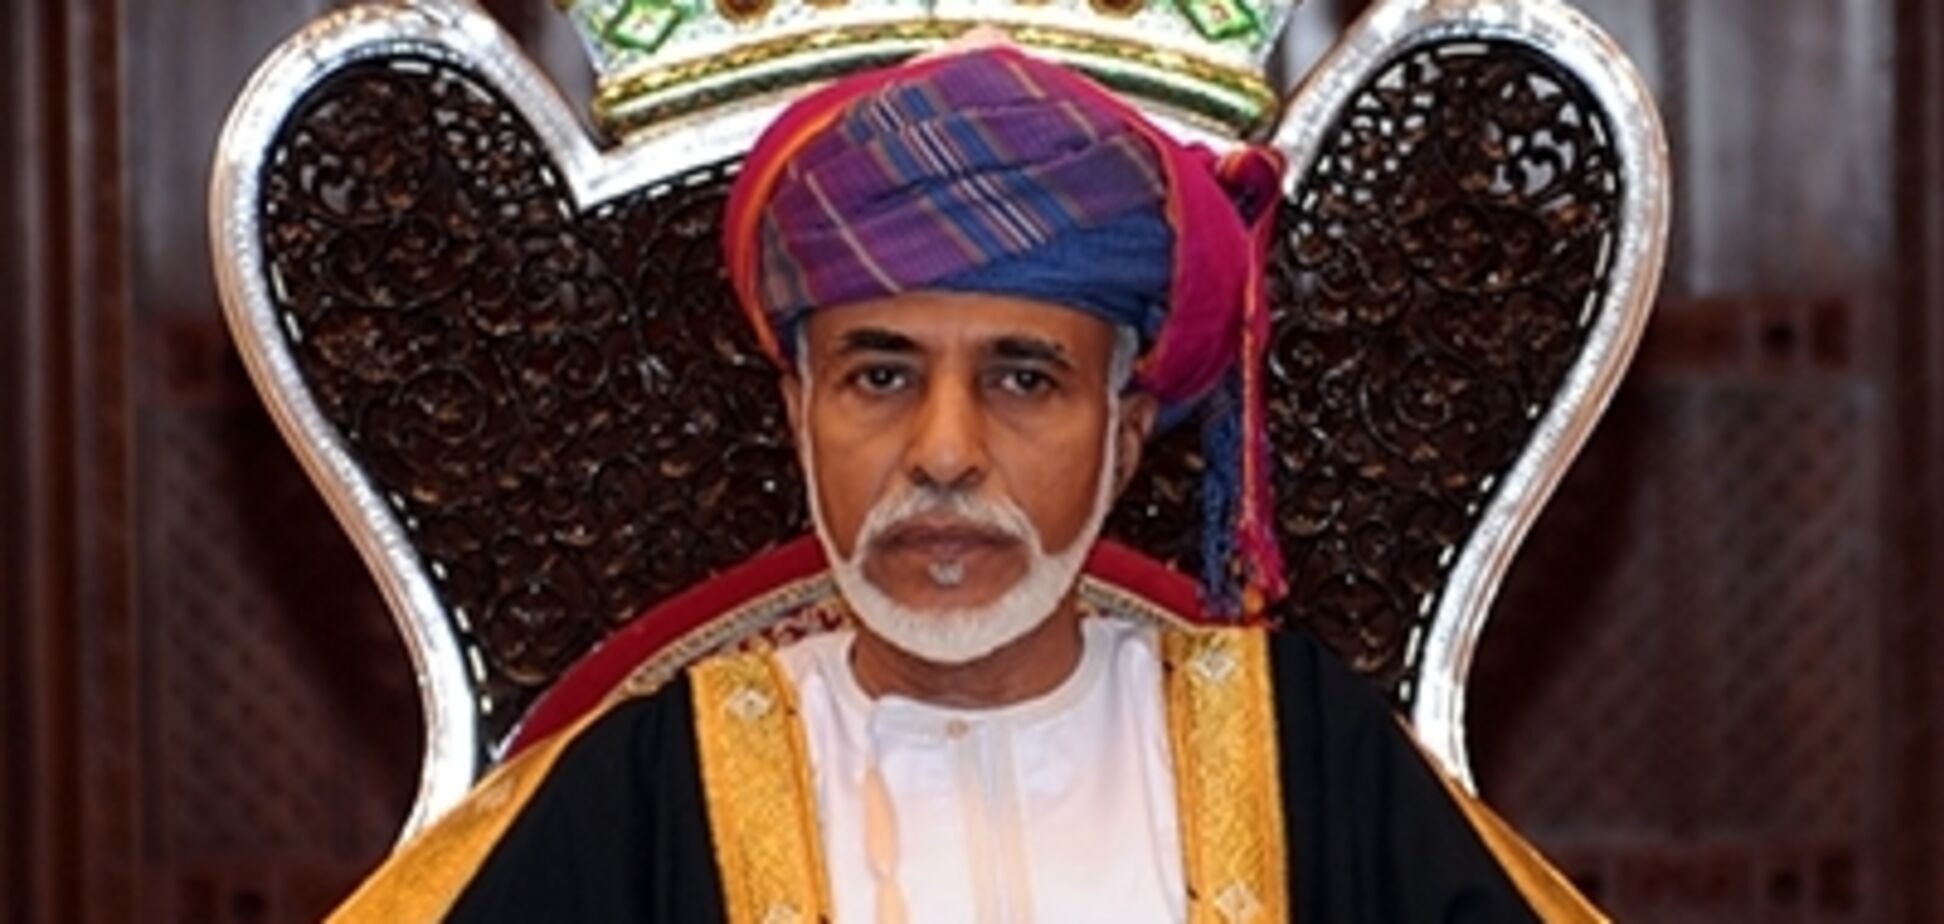 Дворцы, яхты и десятки апартаментов: стало известно об огромном наследстве султана Омана